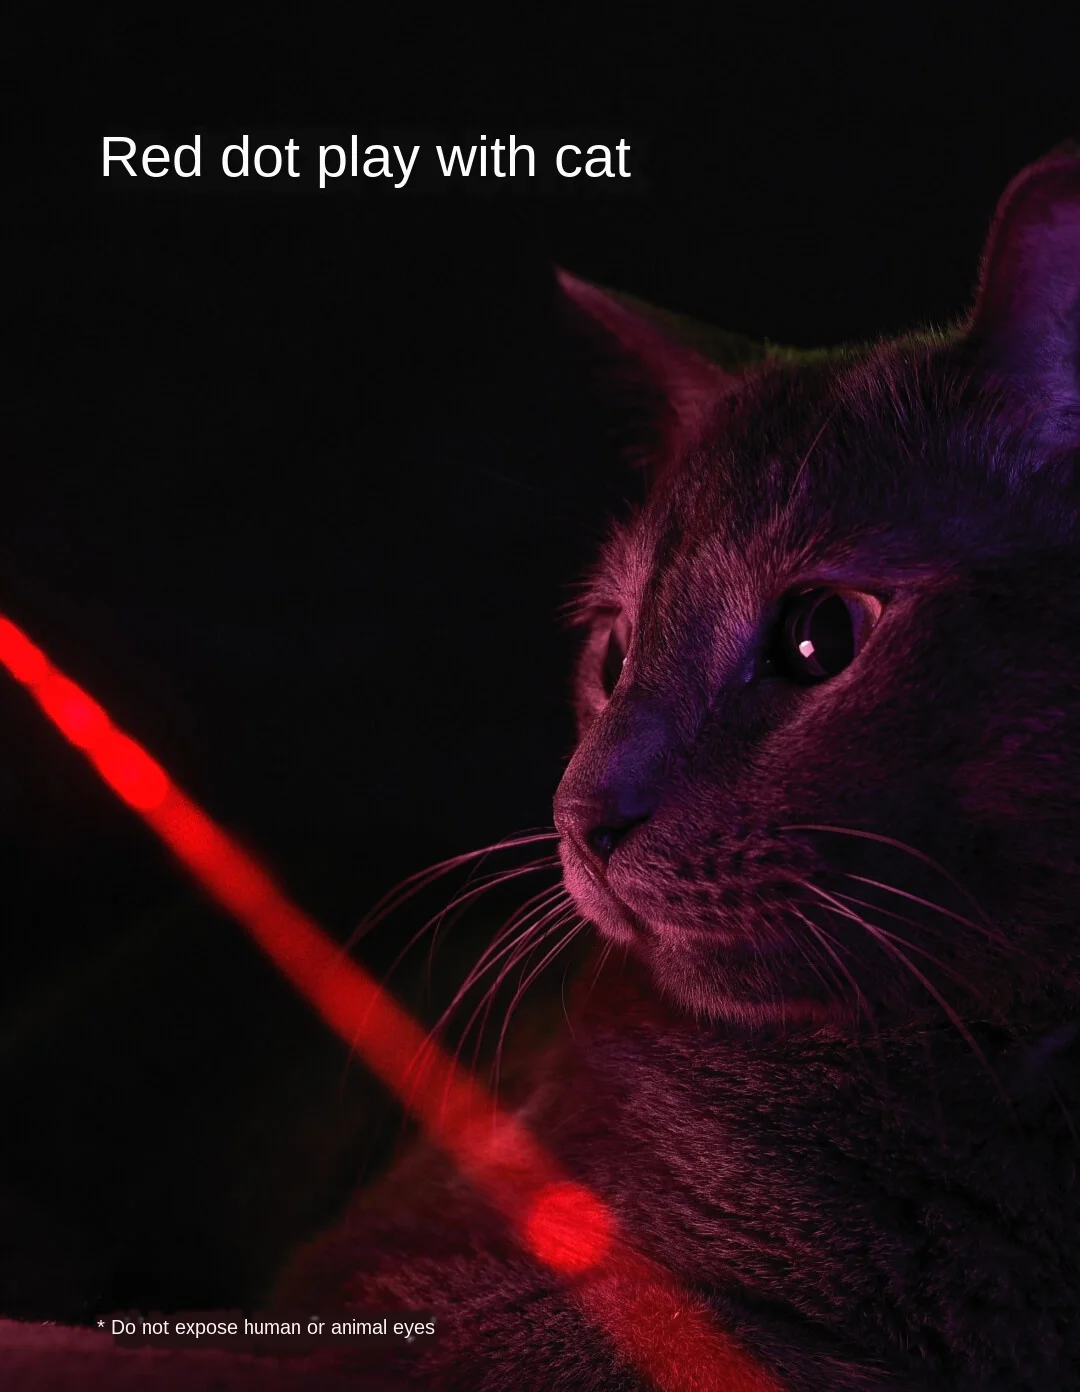 Pointeur laser Moving Light pour chat